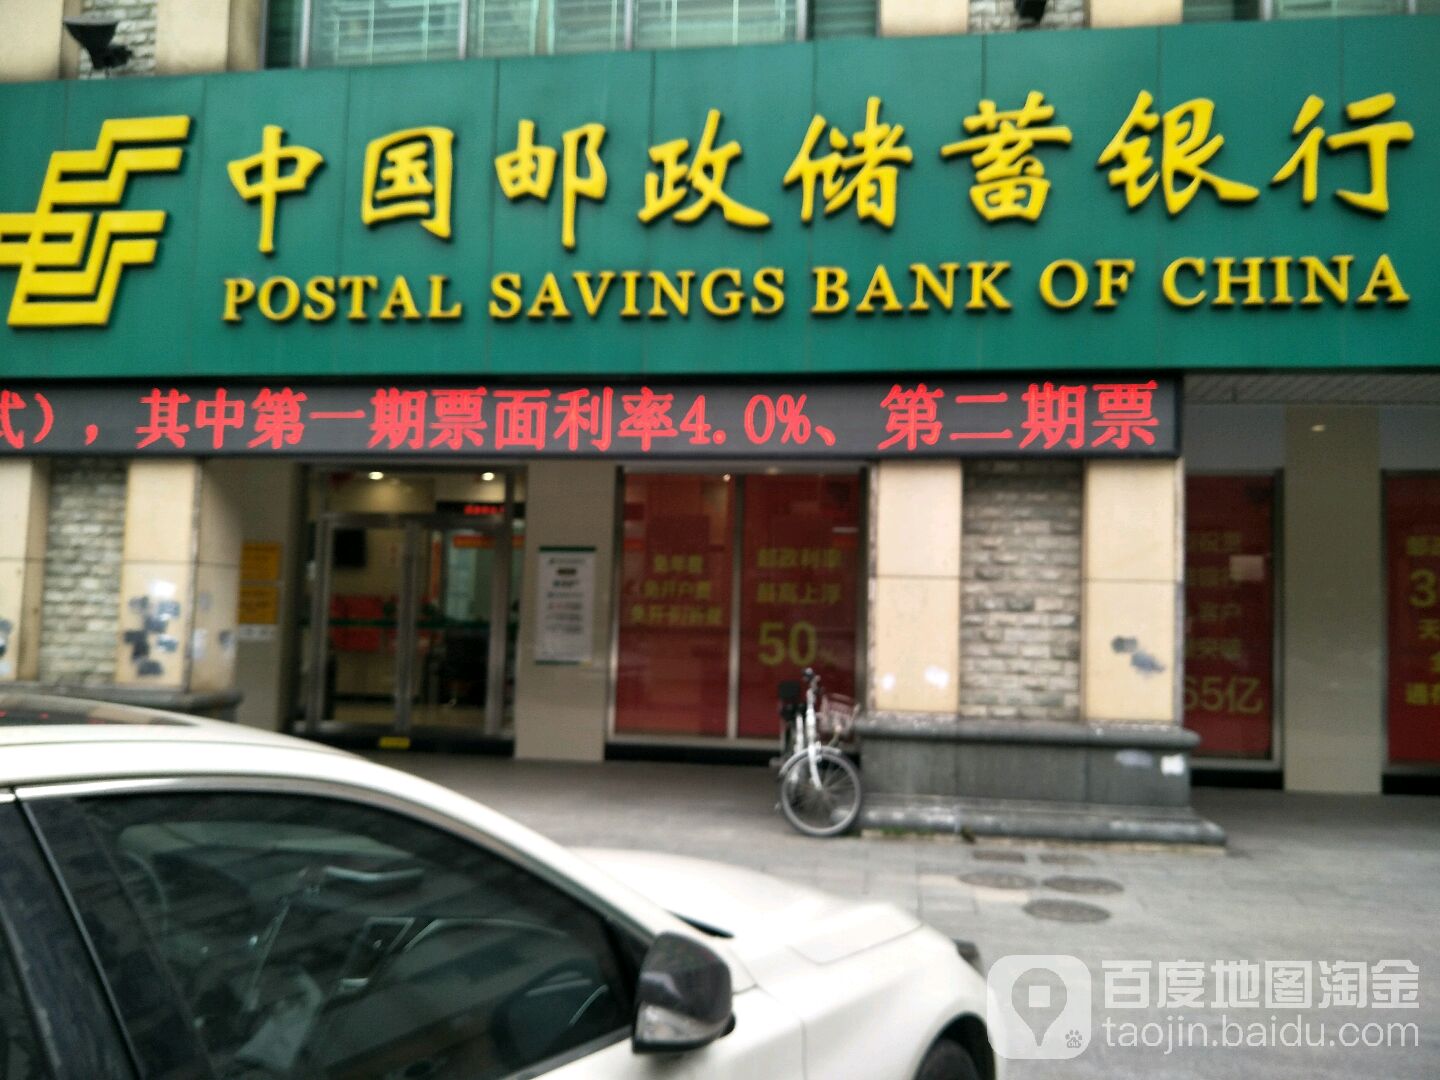 中国邮政储蓄银行24小时自助银行(亲仁支行)